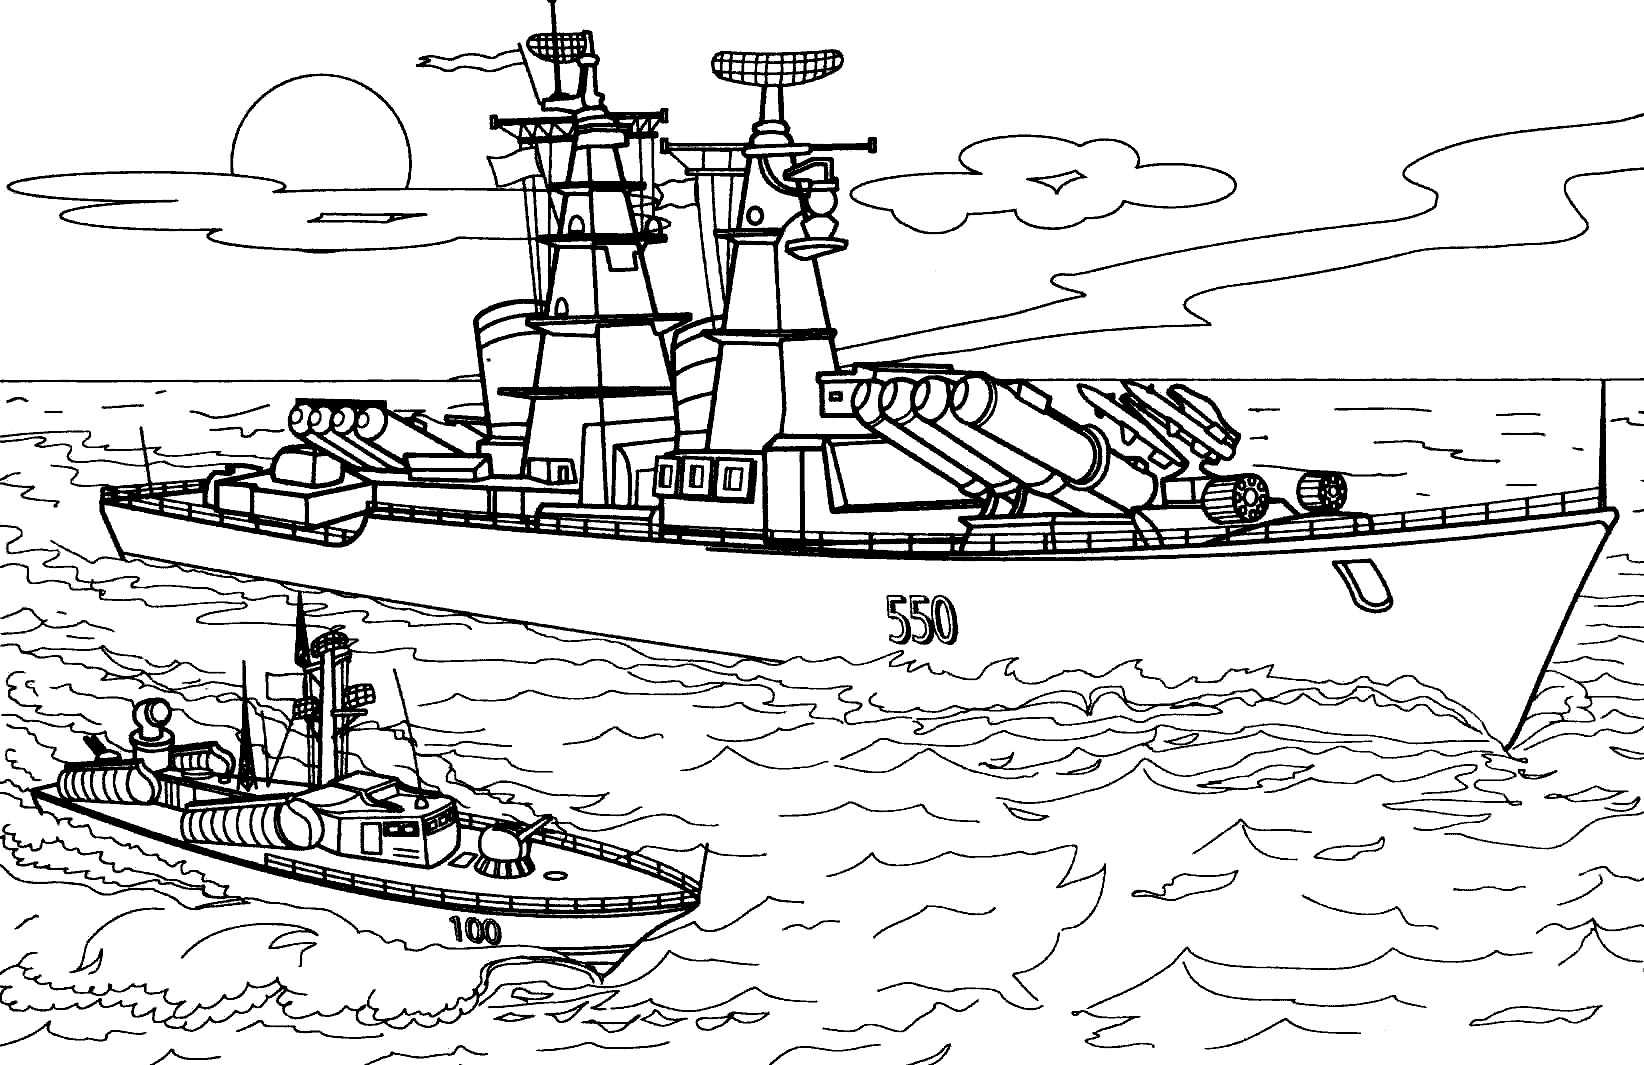 Раскраски Корабли Раскраски лодки, парусники, подводные лодки, военные корабли, лайнеры и пр Раскраски для мальчиков 3-10 лет разного уровня сложности